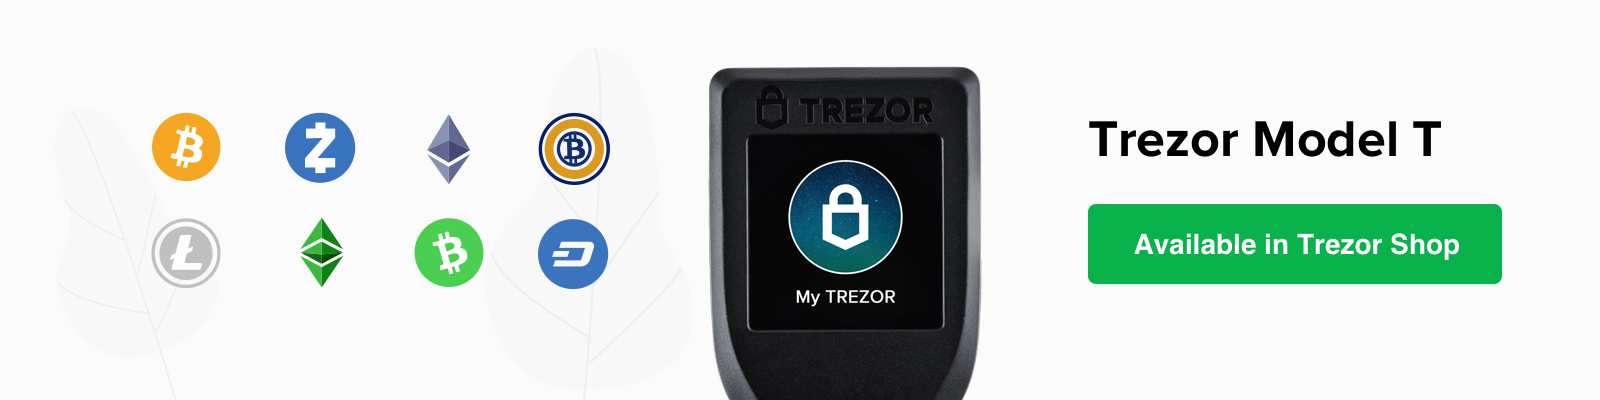 Official E-shop for Trezor Hardware Wallet